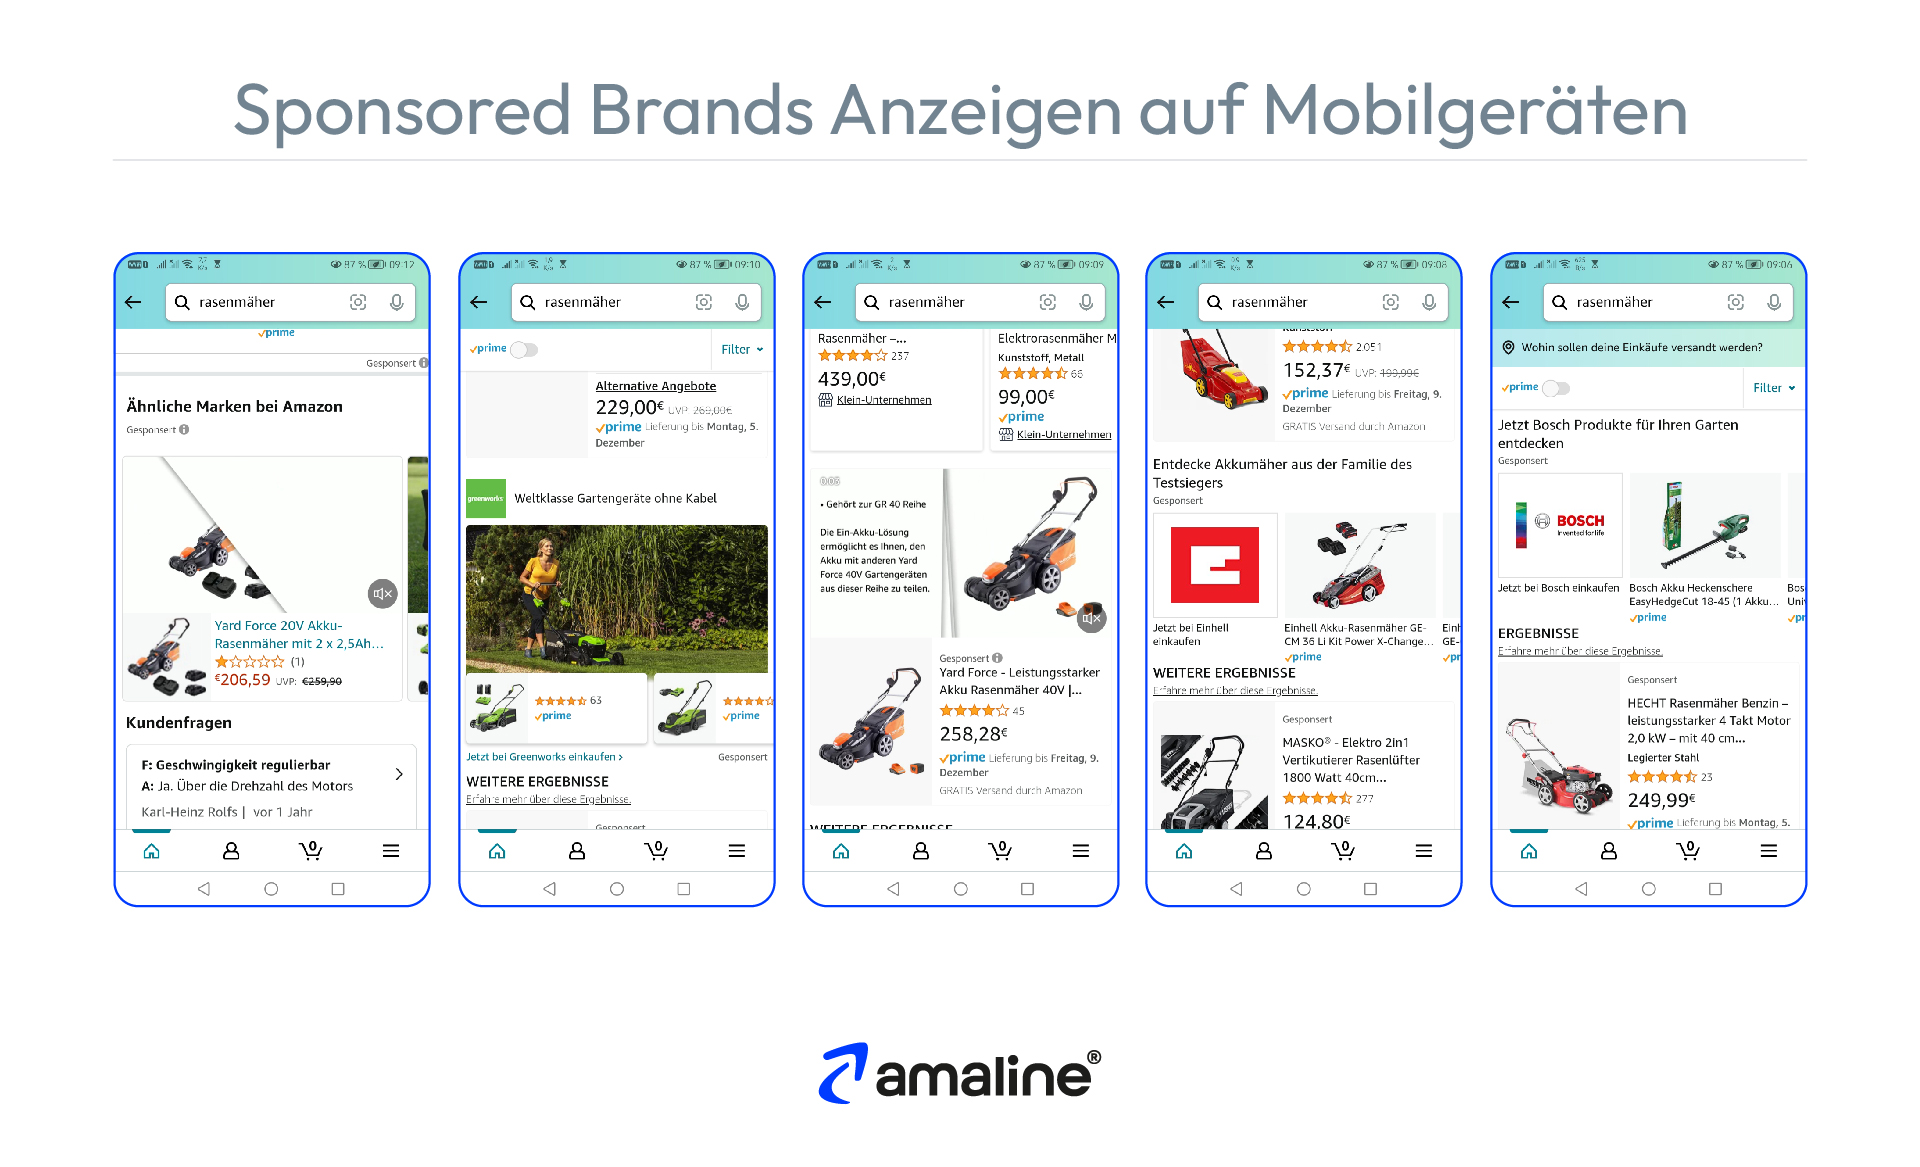 Die Grafik zeigt Beispiele für Sponsored Brands Anzeigen auf dem Smartphone.